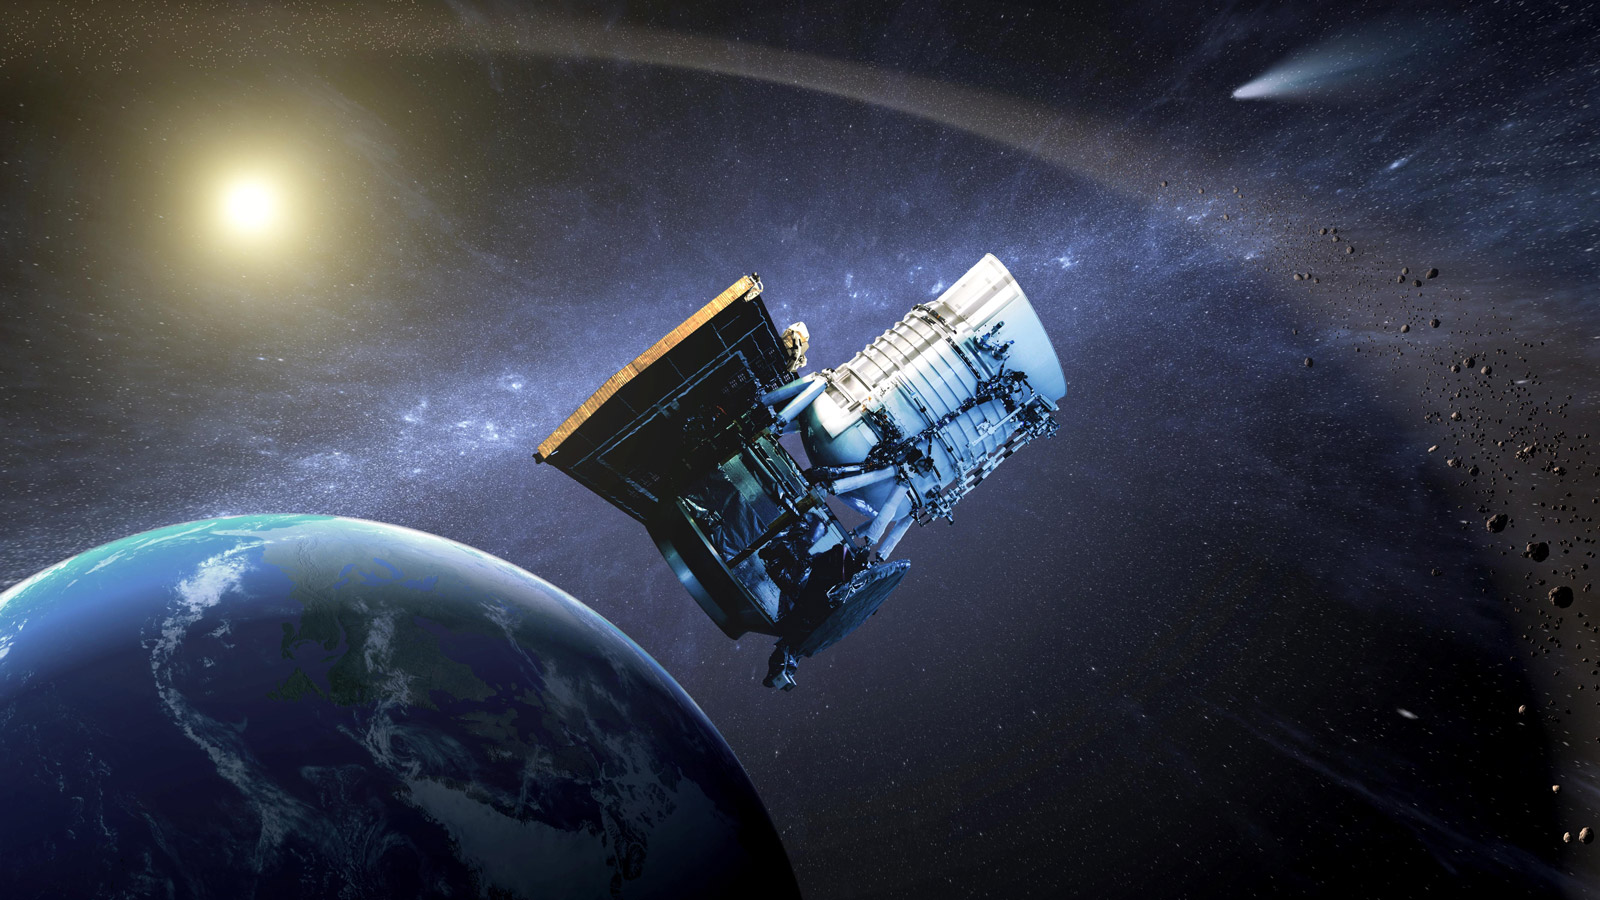 این تصویر فضاپیمای Wide-field Infrared Survey Explorer (WISE) را در مدار زمین نشان می دهد. ماموریت WISE در سال 2011 به پایان رسید، اما در سال 2013 فضاپیما برای یافتن و مطالعه سیارک ها و دیگر اجرام نزدیک به زمین (NEOs) تغییر کاربری داد. ماموریت و فضاپیما به NEOWISE تغییر نام دادند.